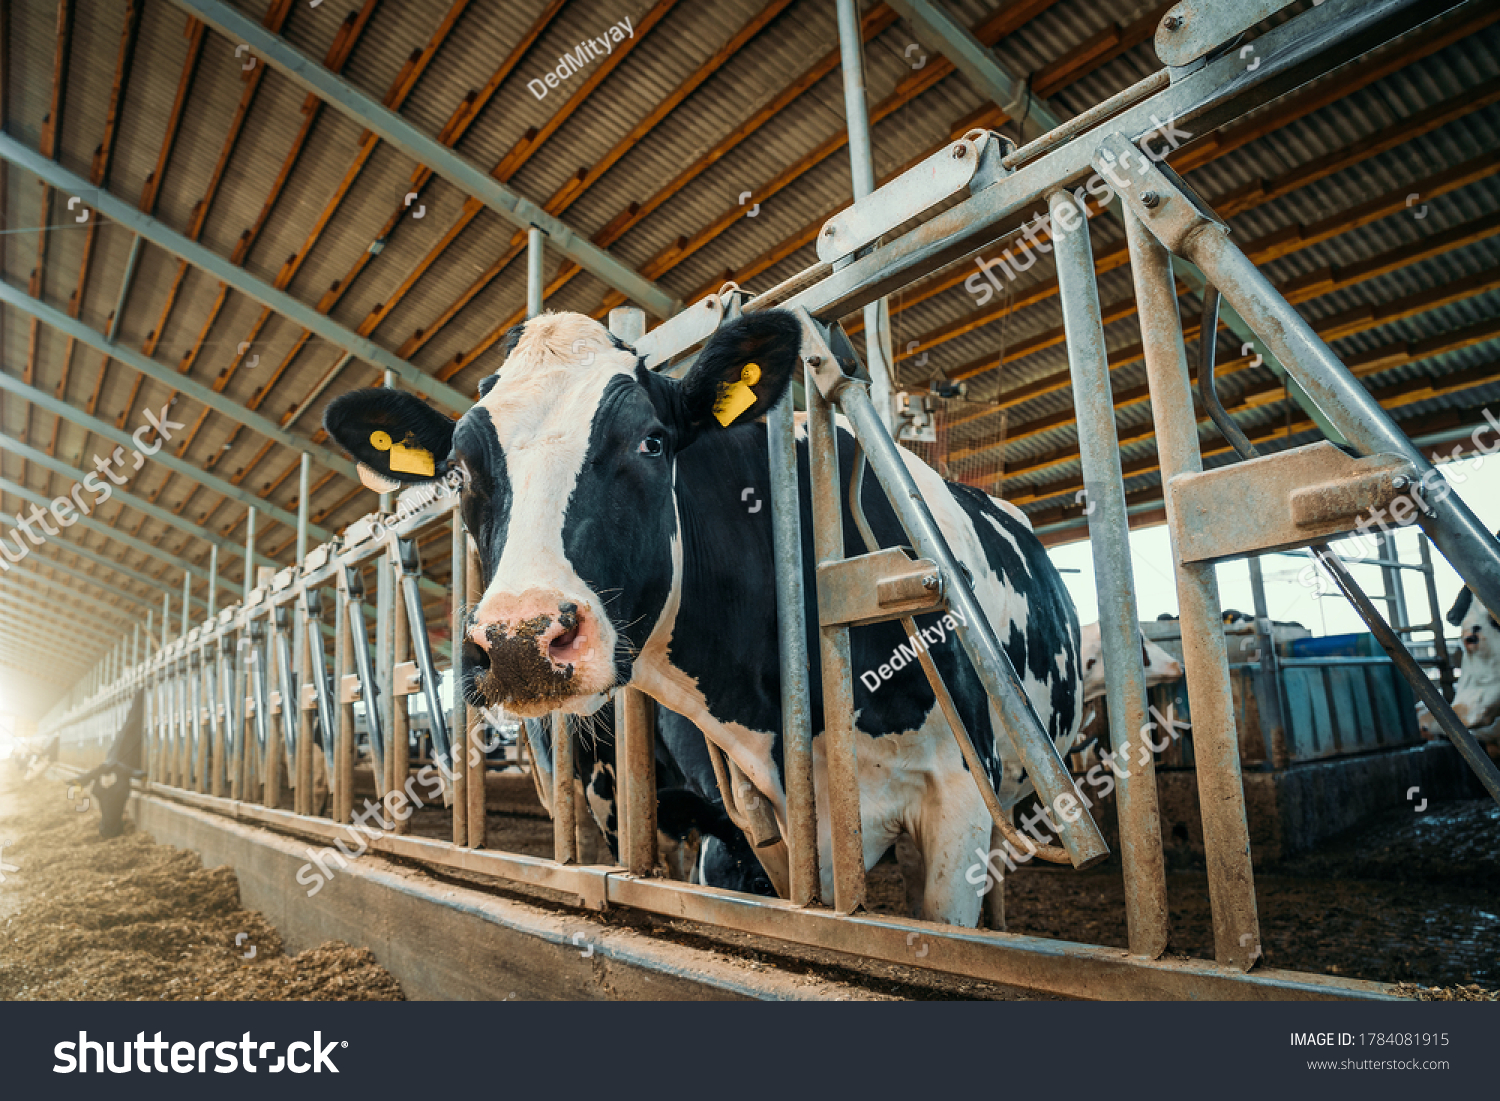 Cows on dairy farm. Cows breeding at modern milk or dairy farm. Cattle feeding with hay. #1784081915